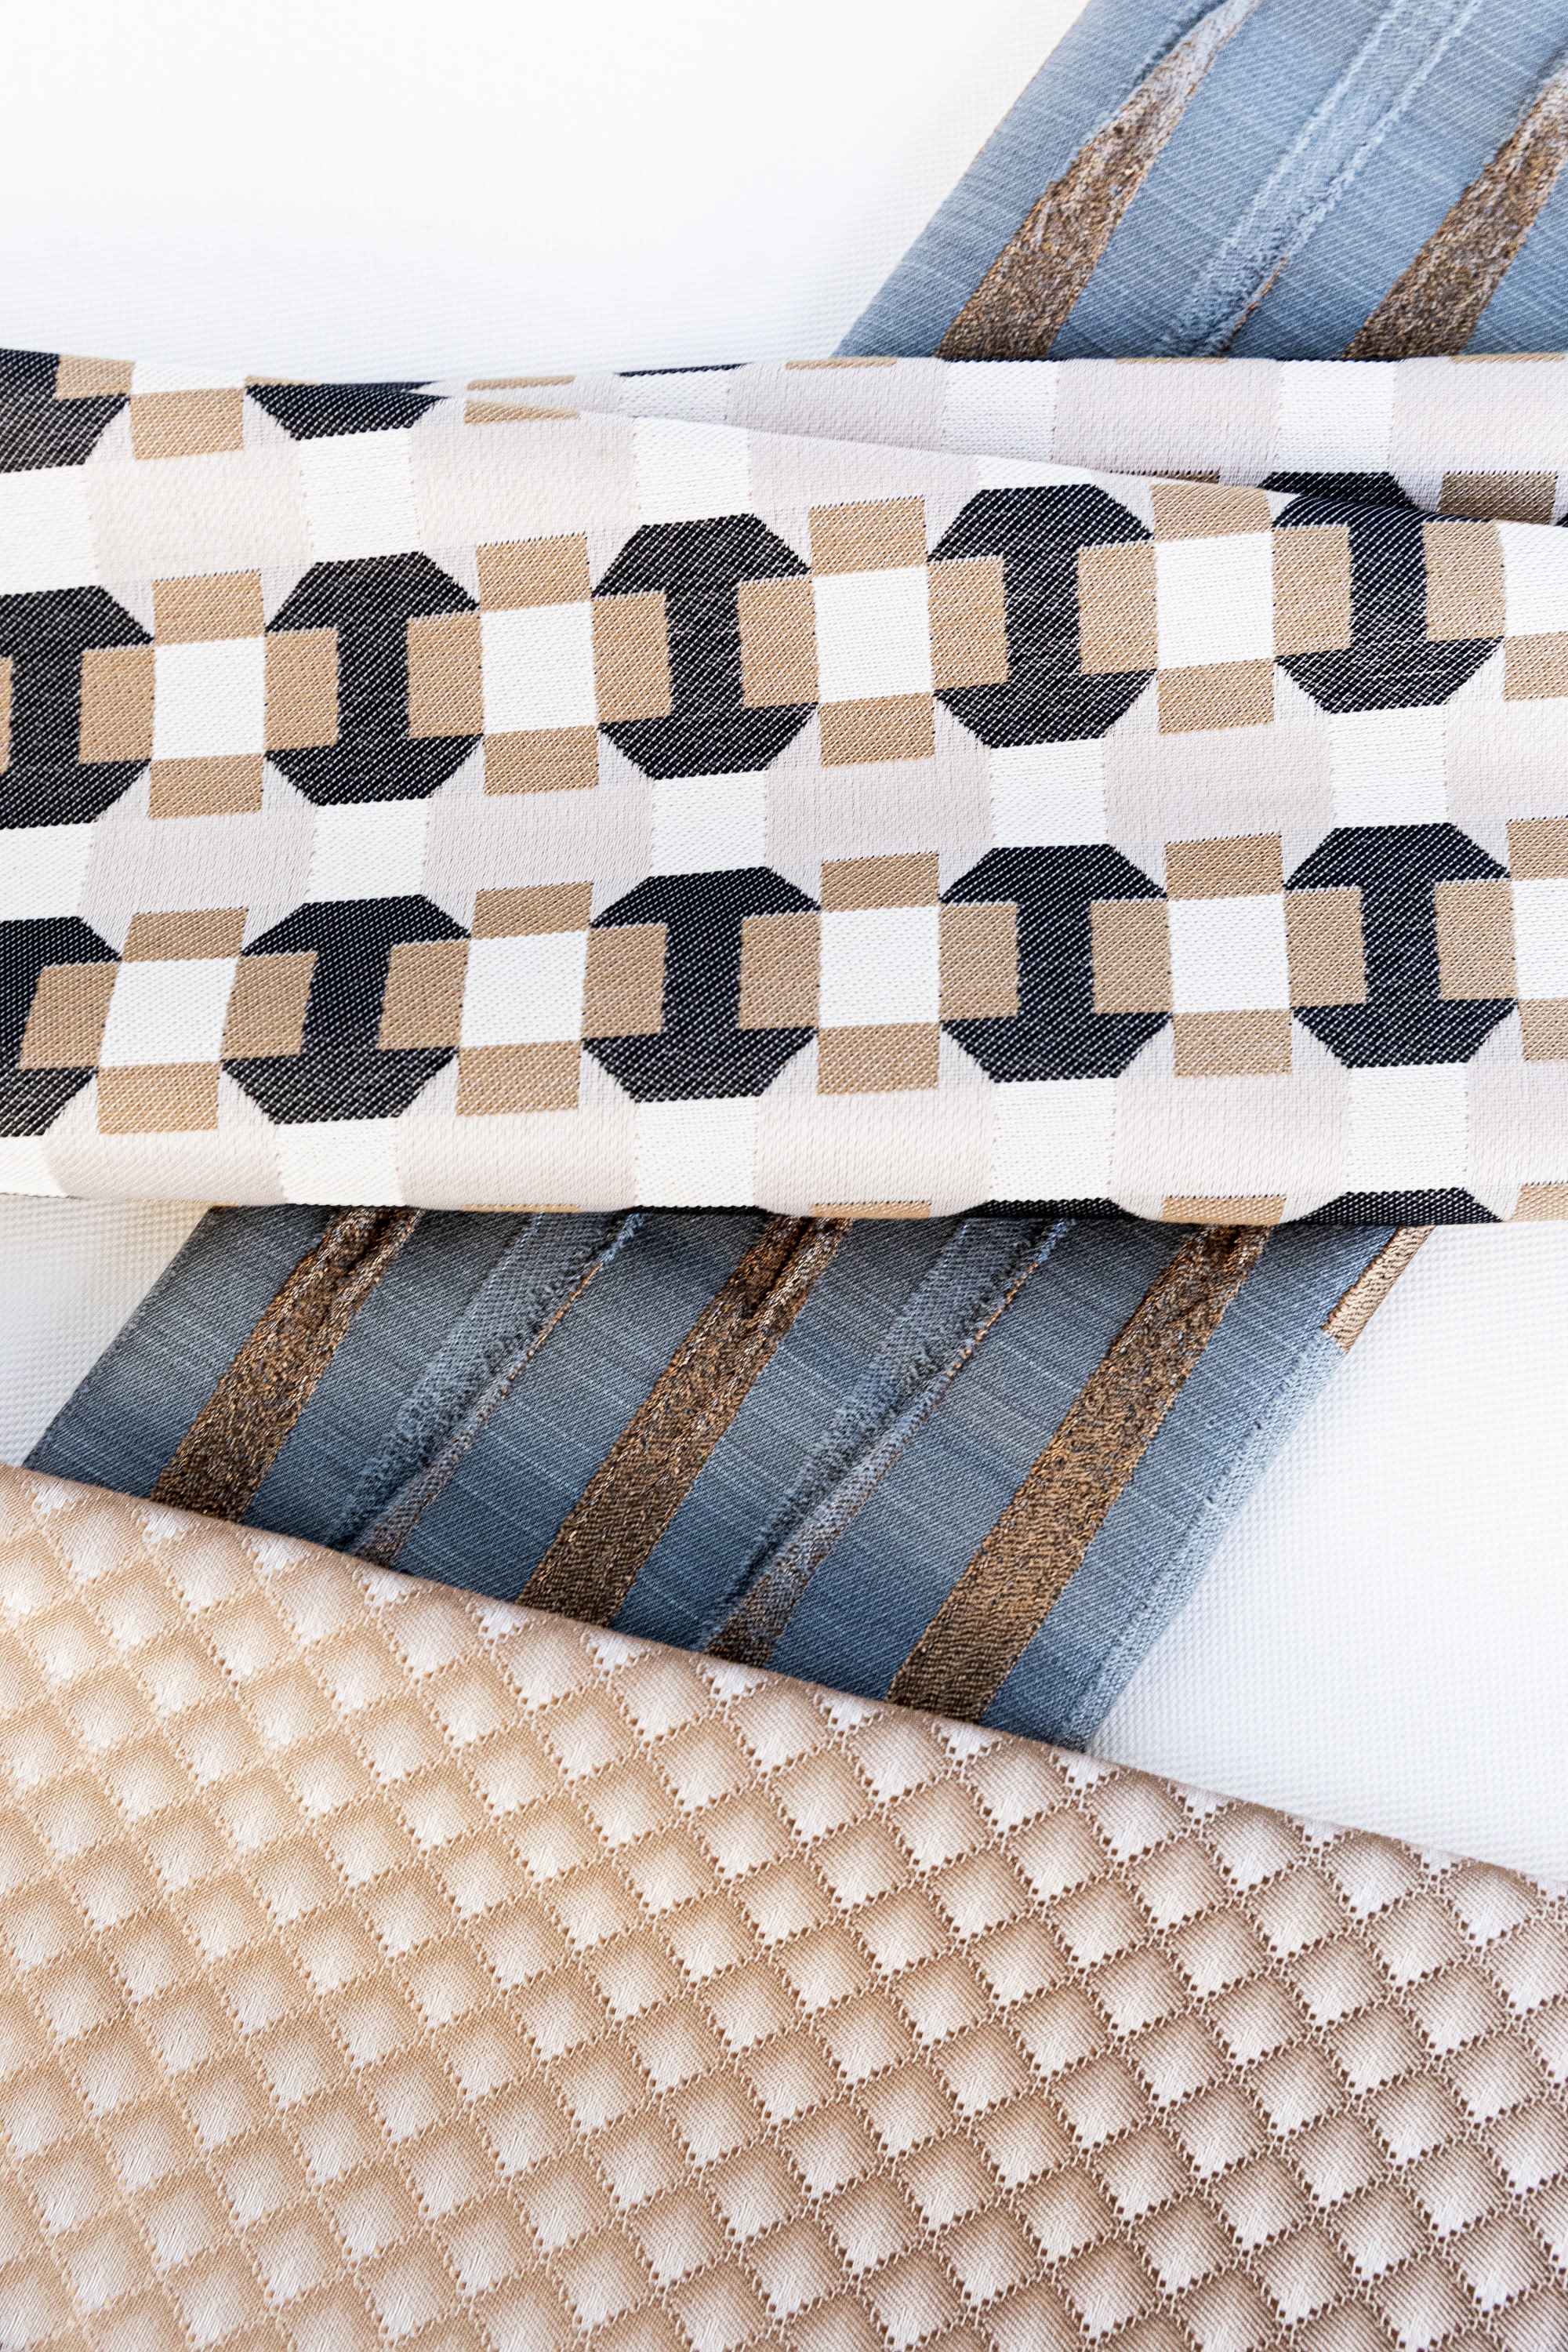 layered patterned fabrics